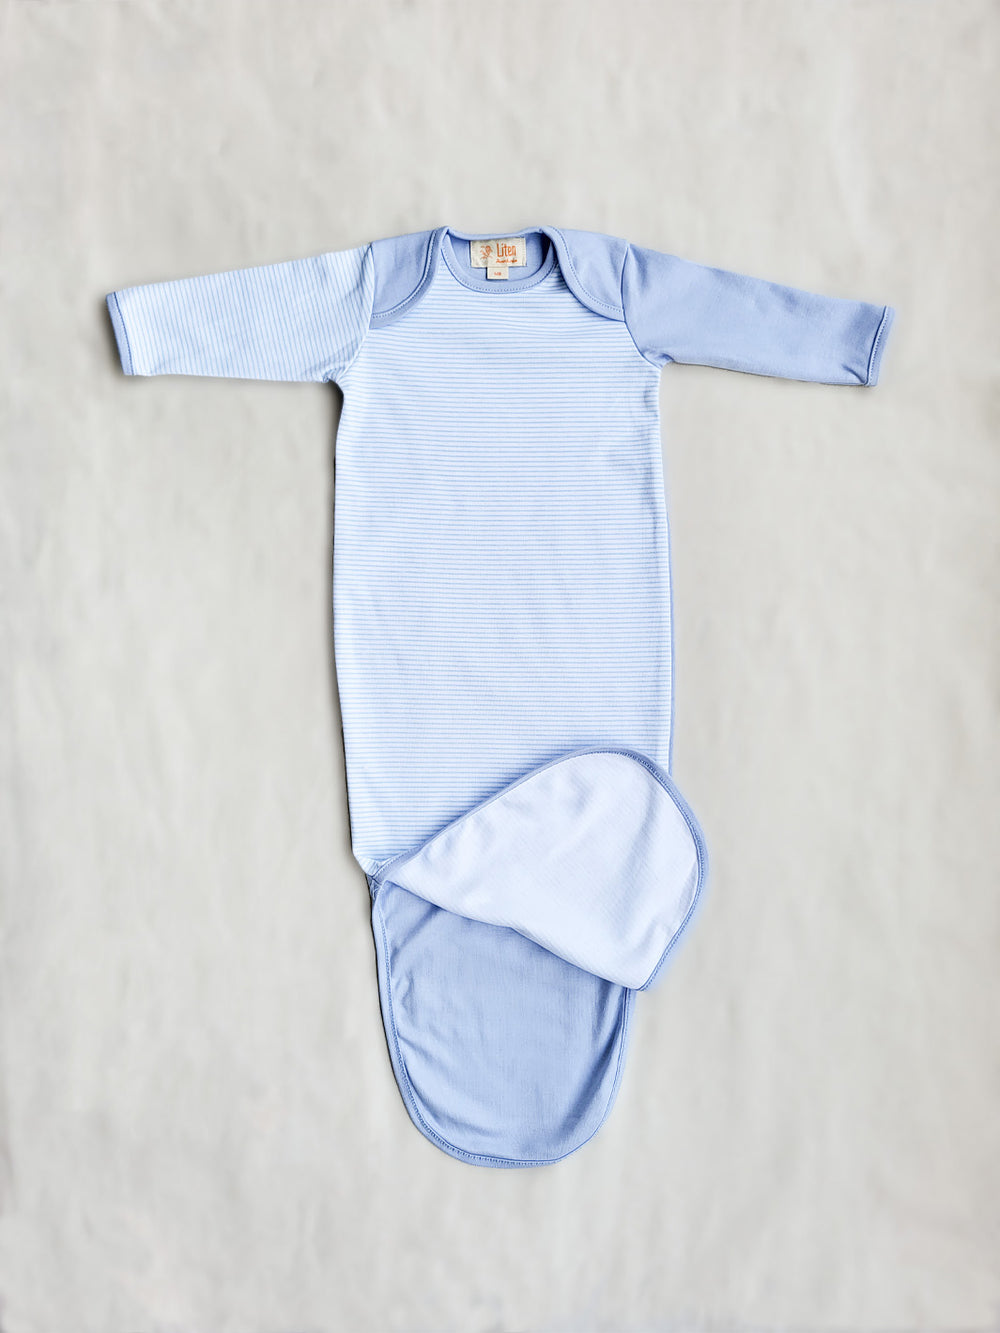 Newborn Organic Cotton Baby Sleeping Bag in Blue | Mjuk spädbarnssovsäck i blått, av ekologisk bomull